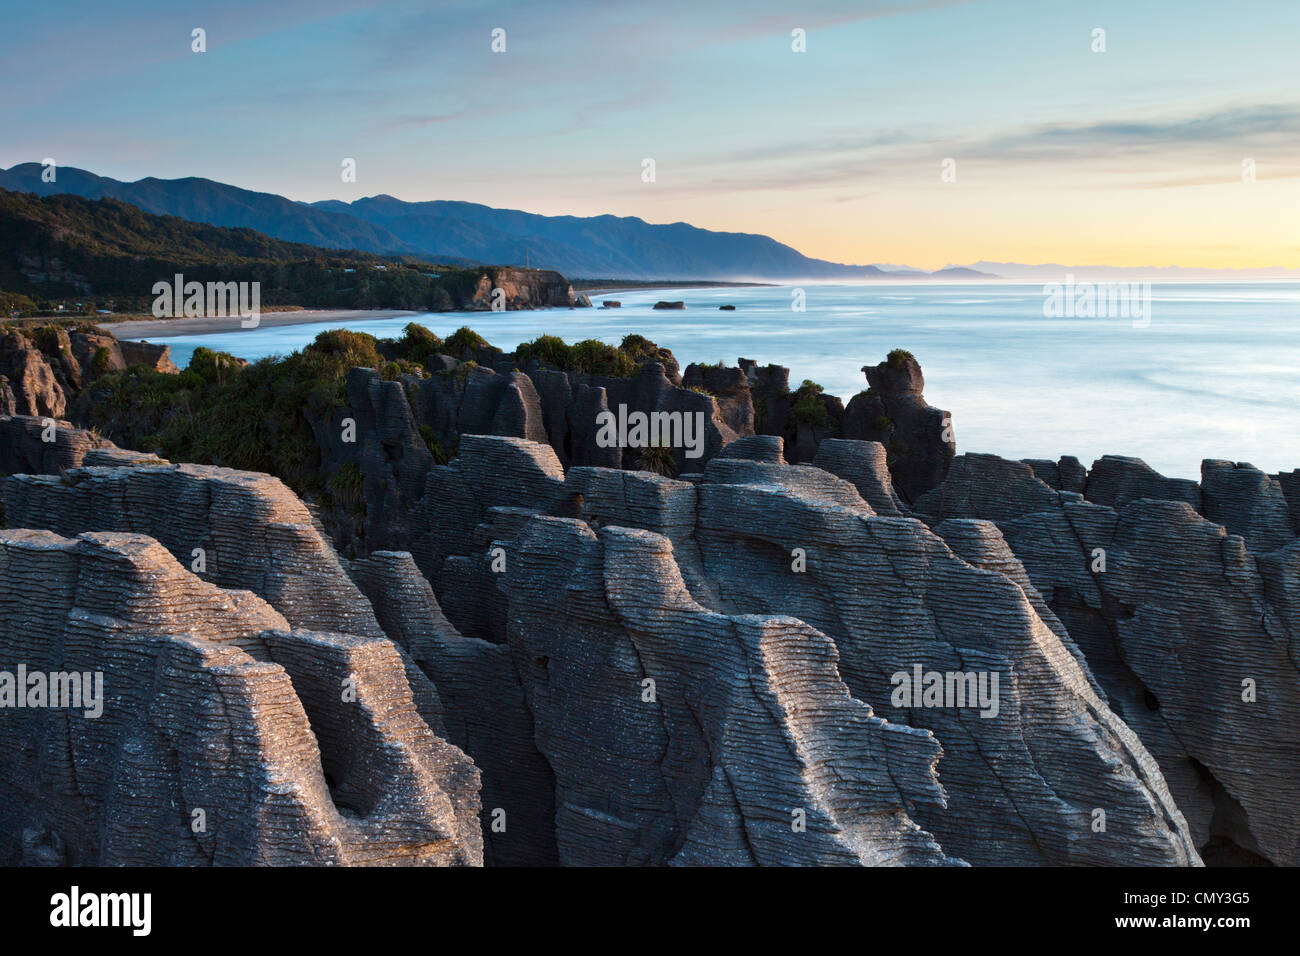 Erodiert Kalksteinformationen bekannt als Pancake Rocks, Dolomit Point, Punakaiki, an der Westküste der Südinsel Neuseelands. Stockfoto